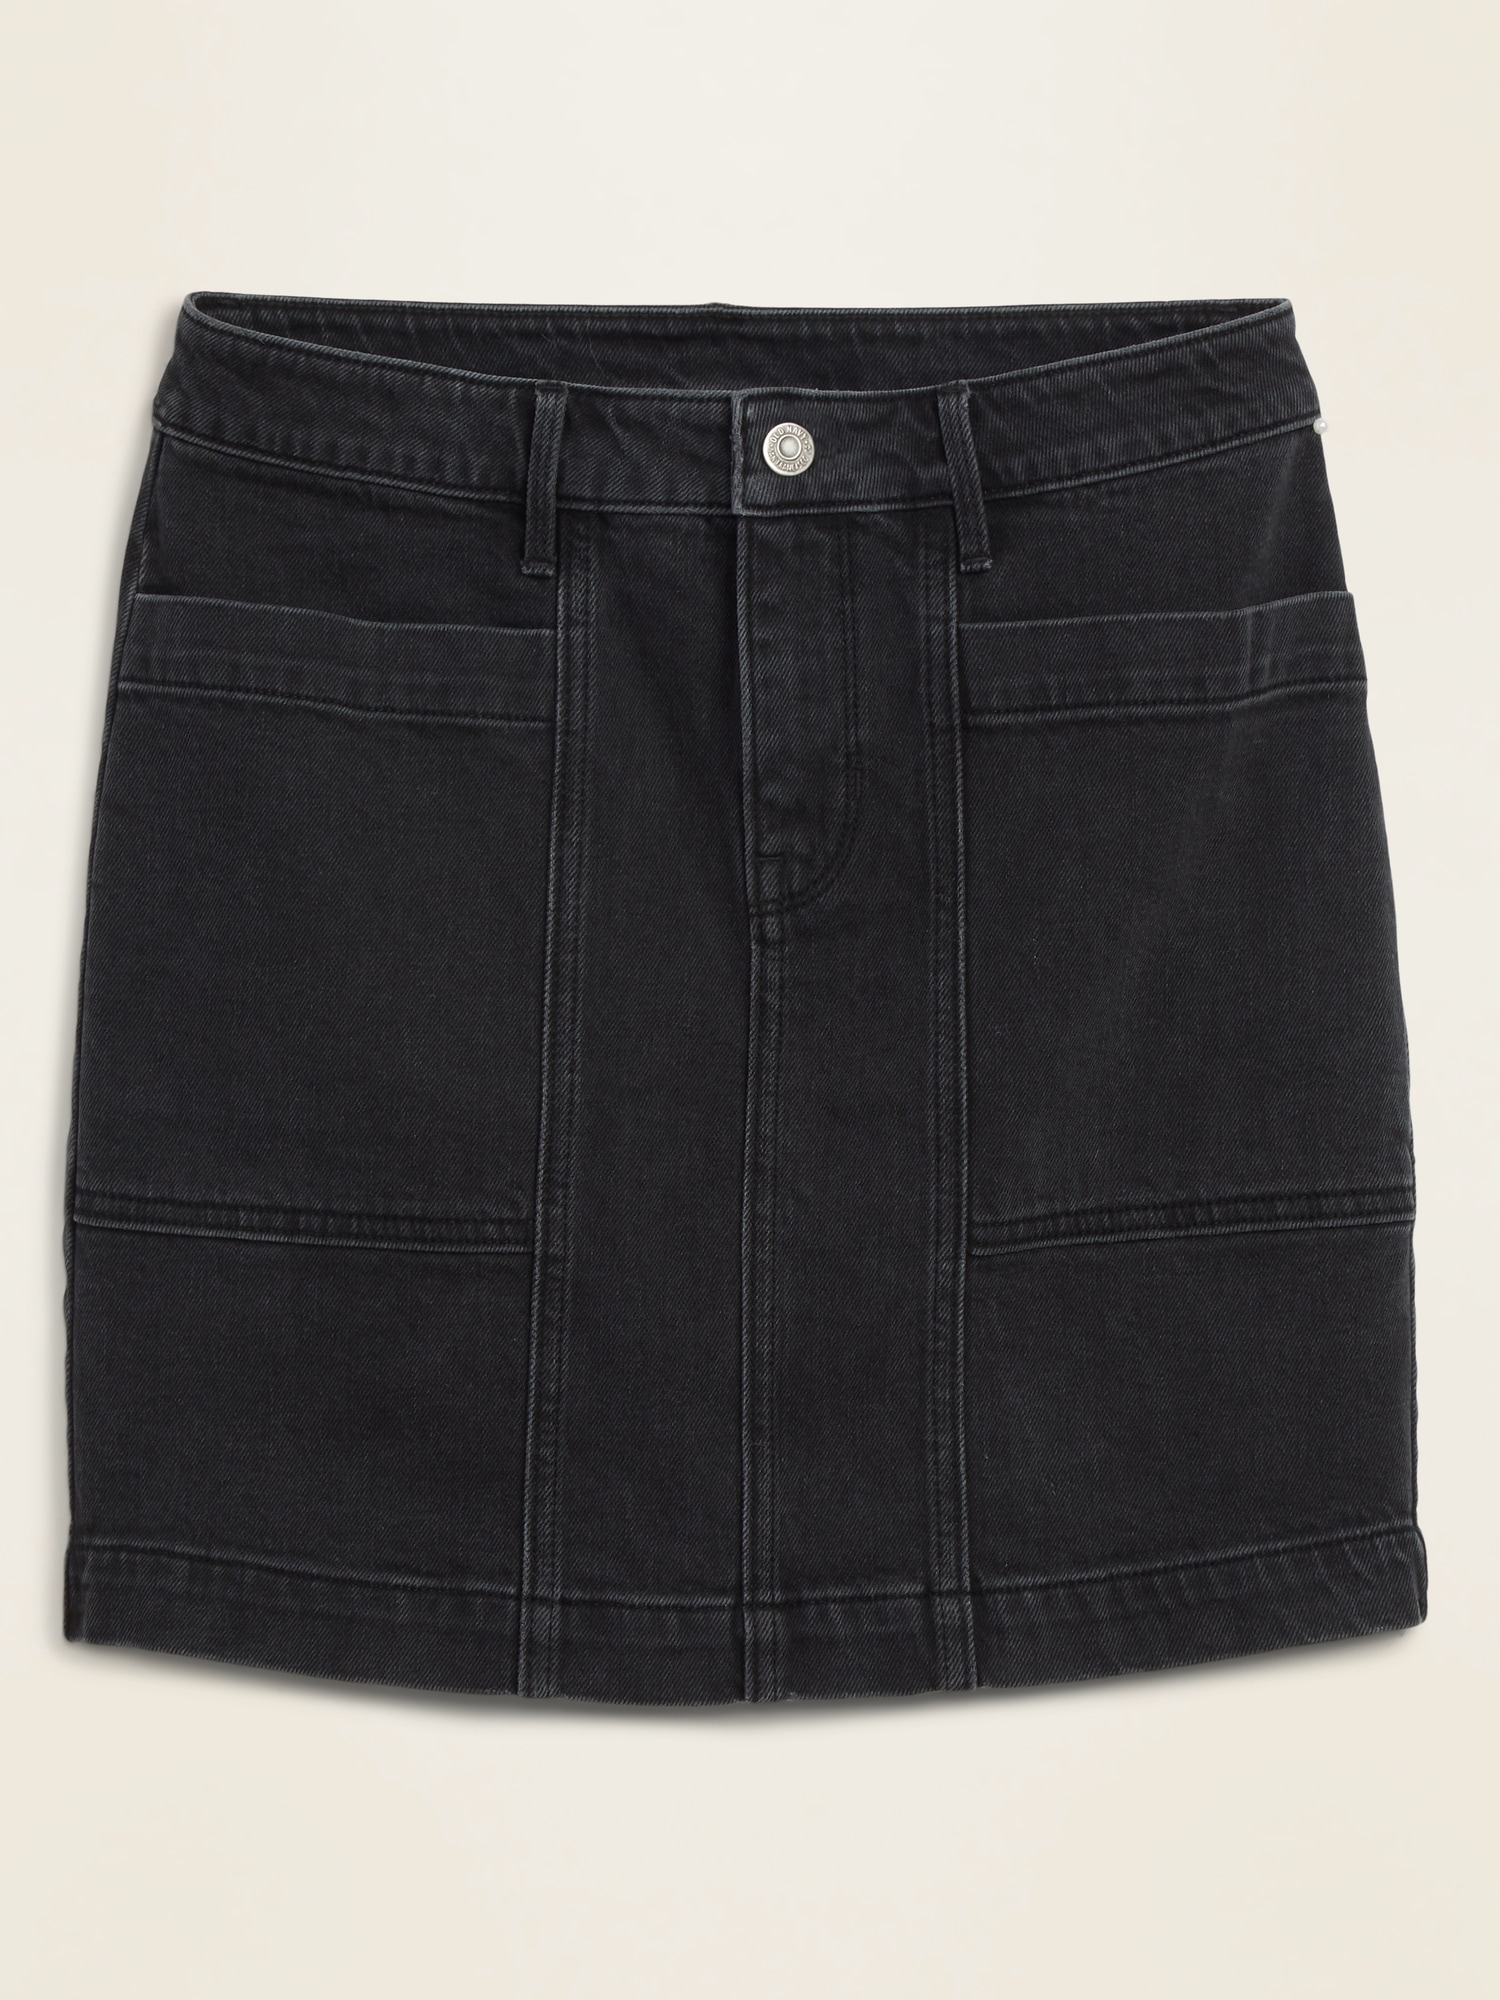 old navy black denim skirt